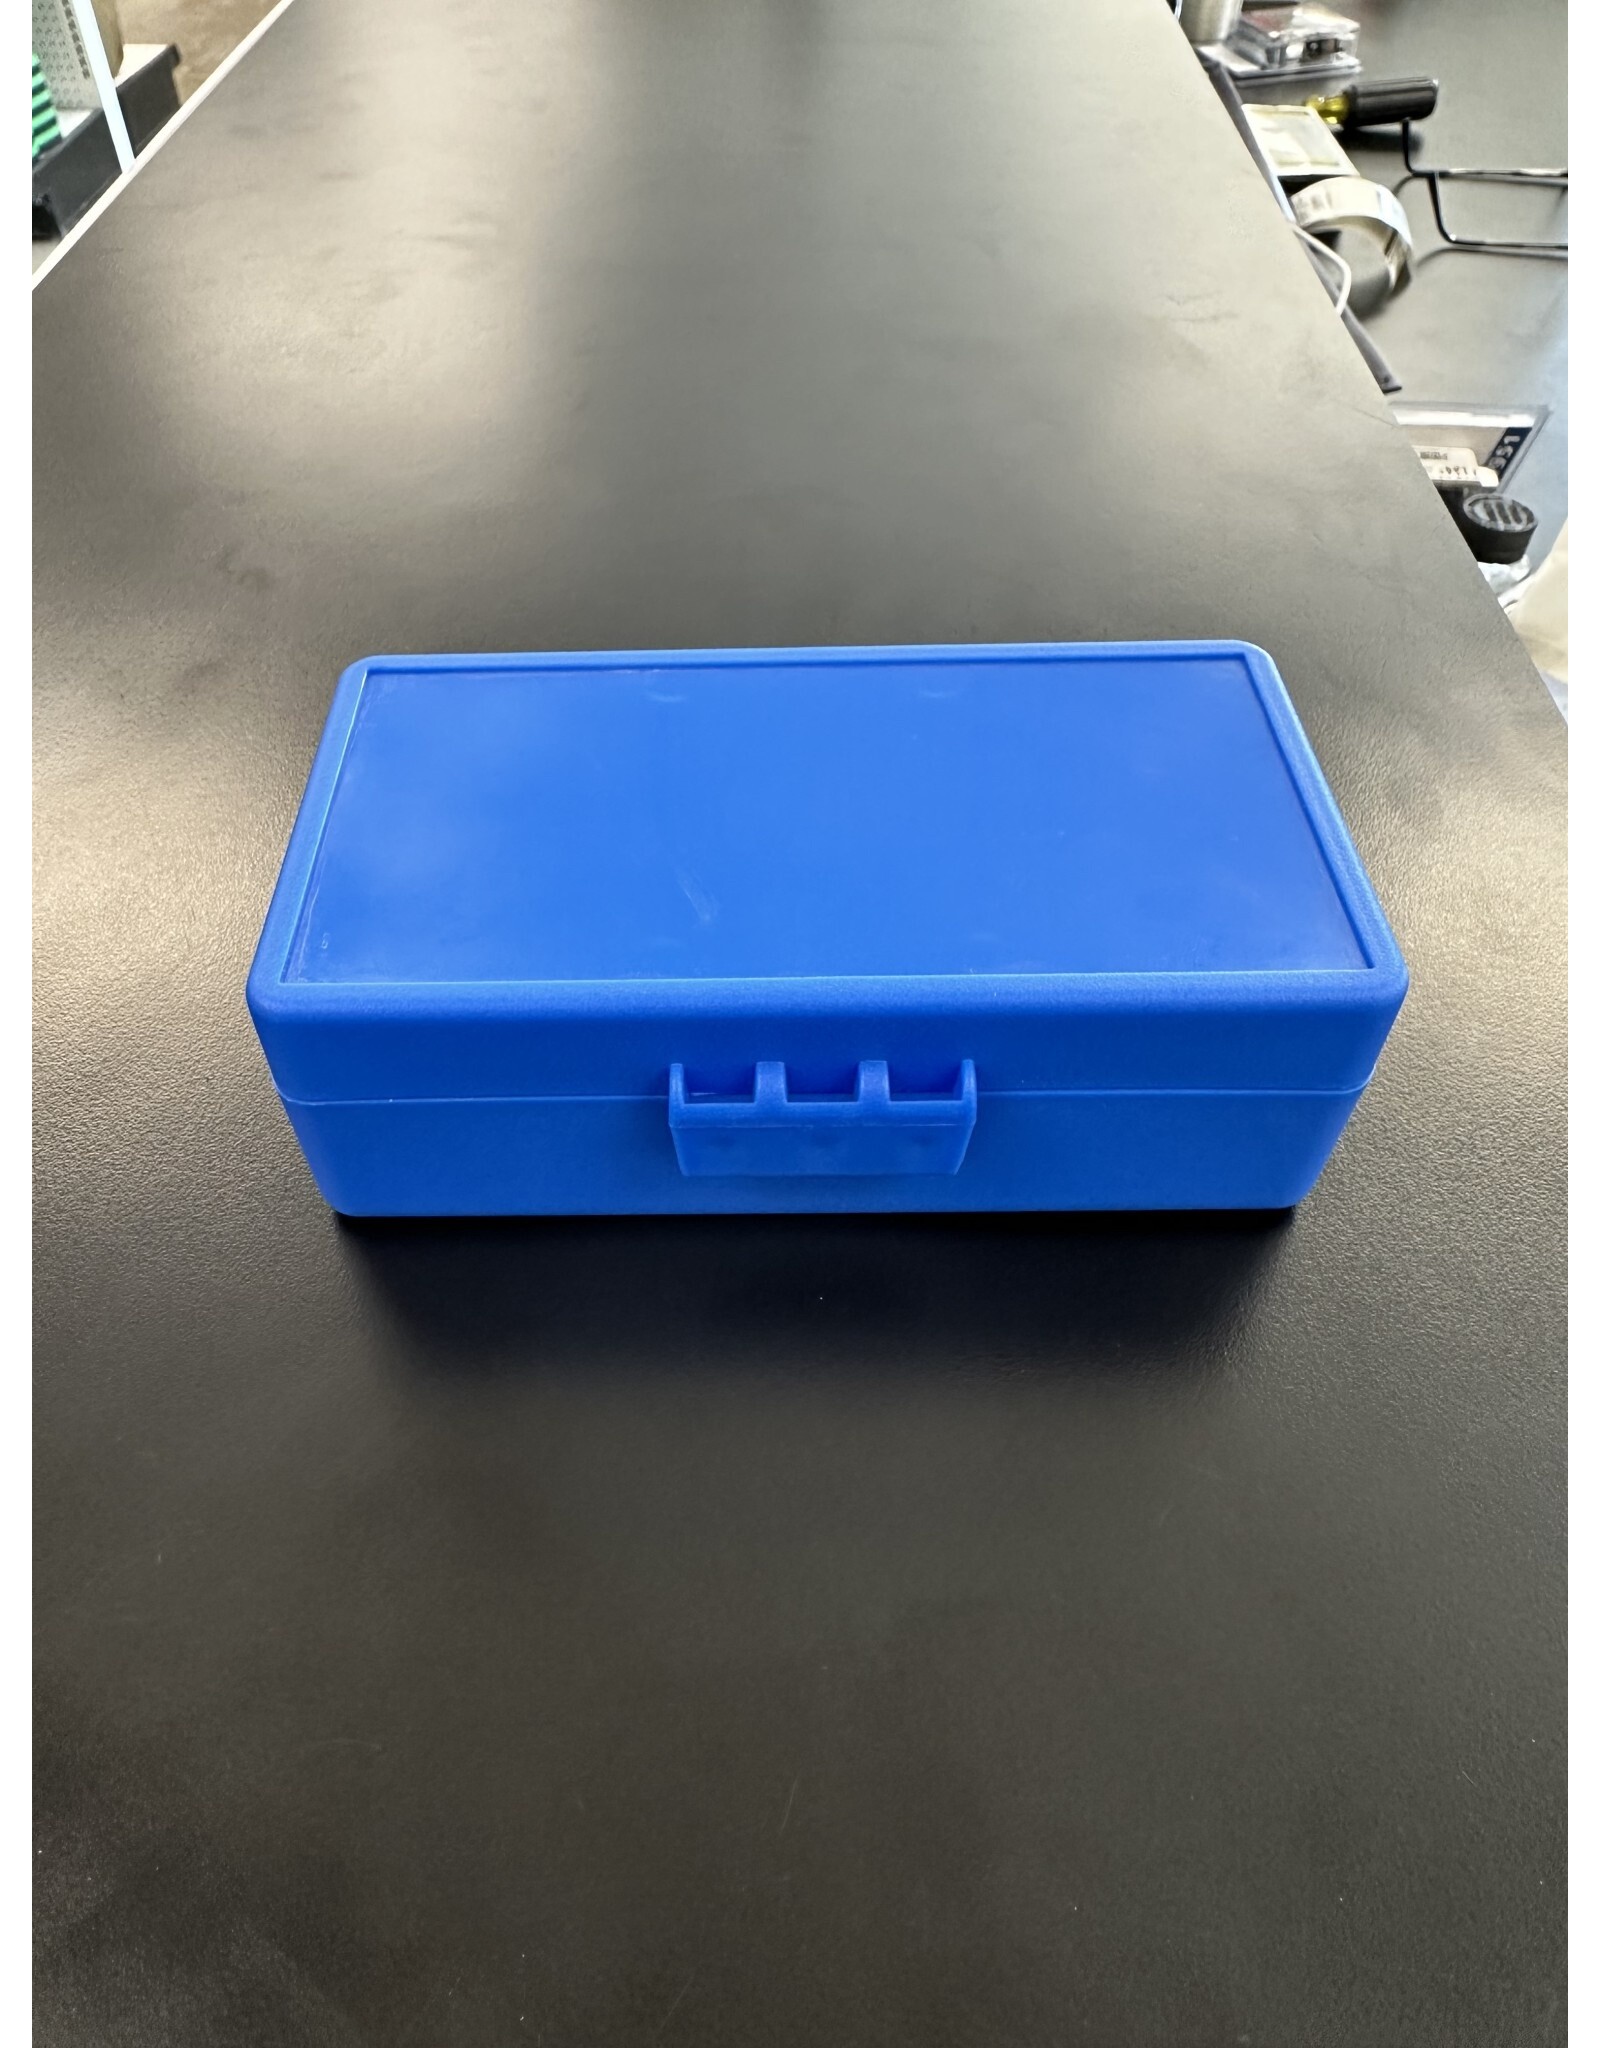 Foam Padded Blue Box 5"L x 3"W x 1.75"H